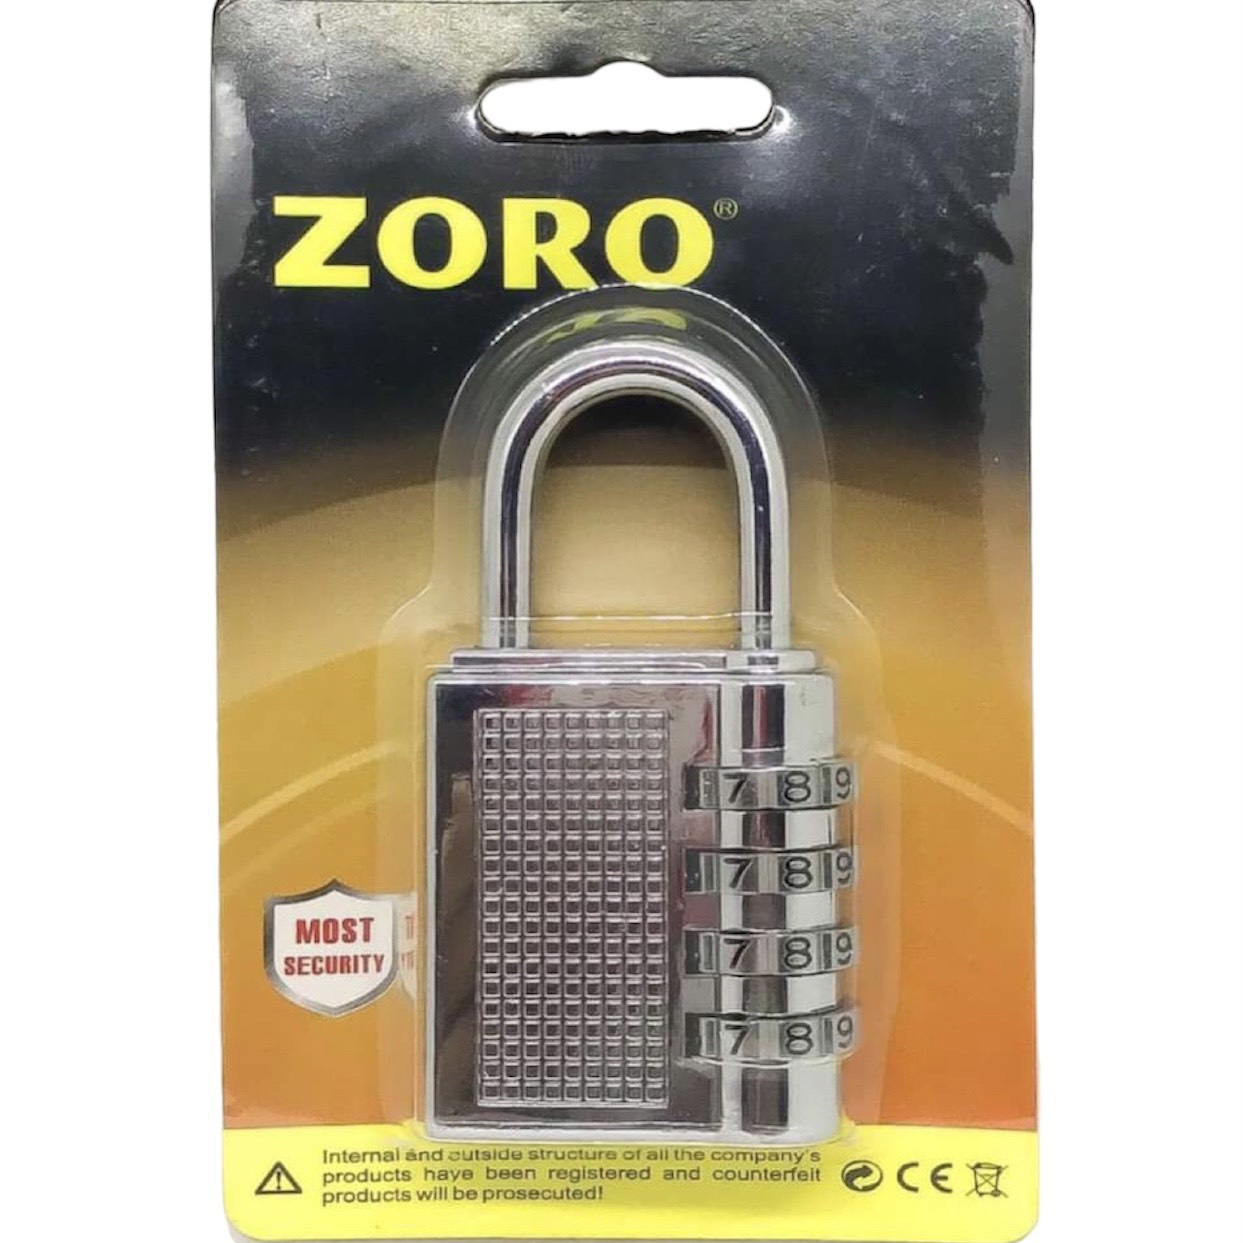 Ổ khóa số mật mã ZORO màu trắng 4 phân - thích hợp khóa tủ,cửa phòng trọ - ổ khóa mật khẩu 4 số bảo mật cao - nhỏ gọn